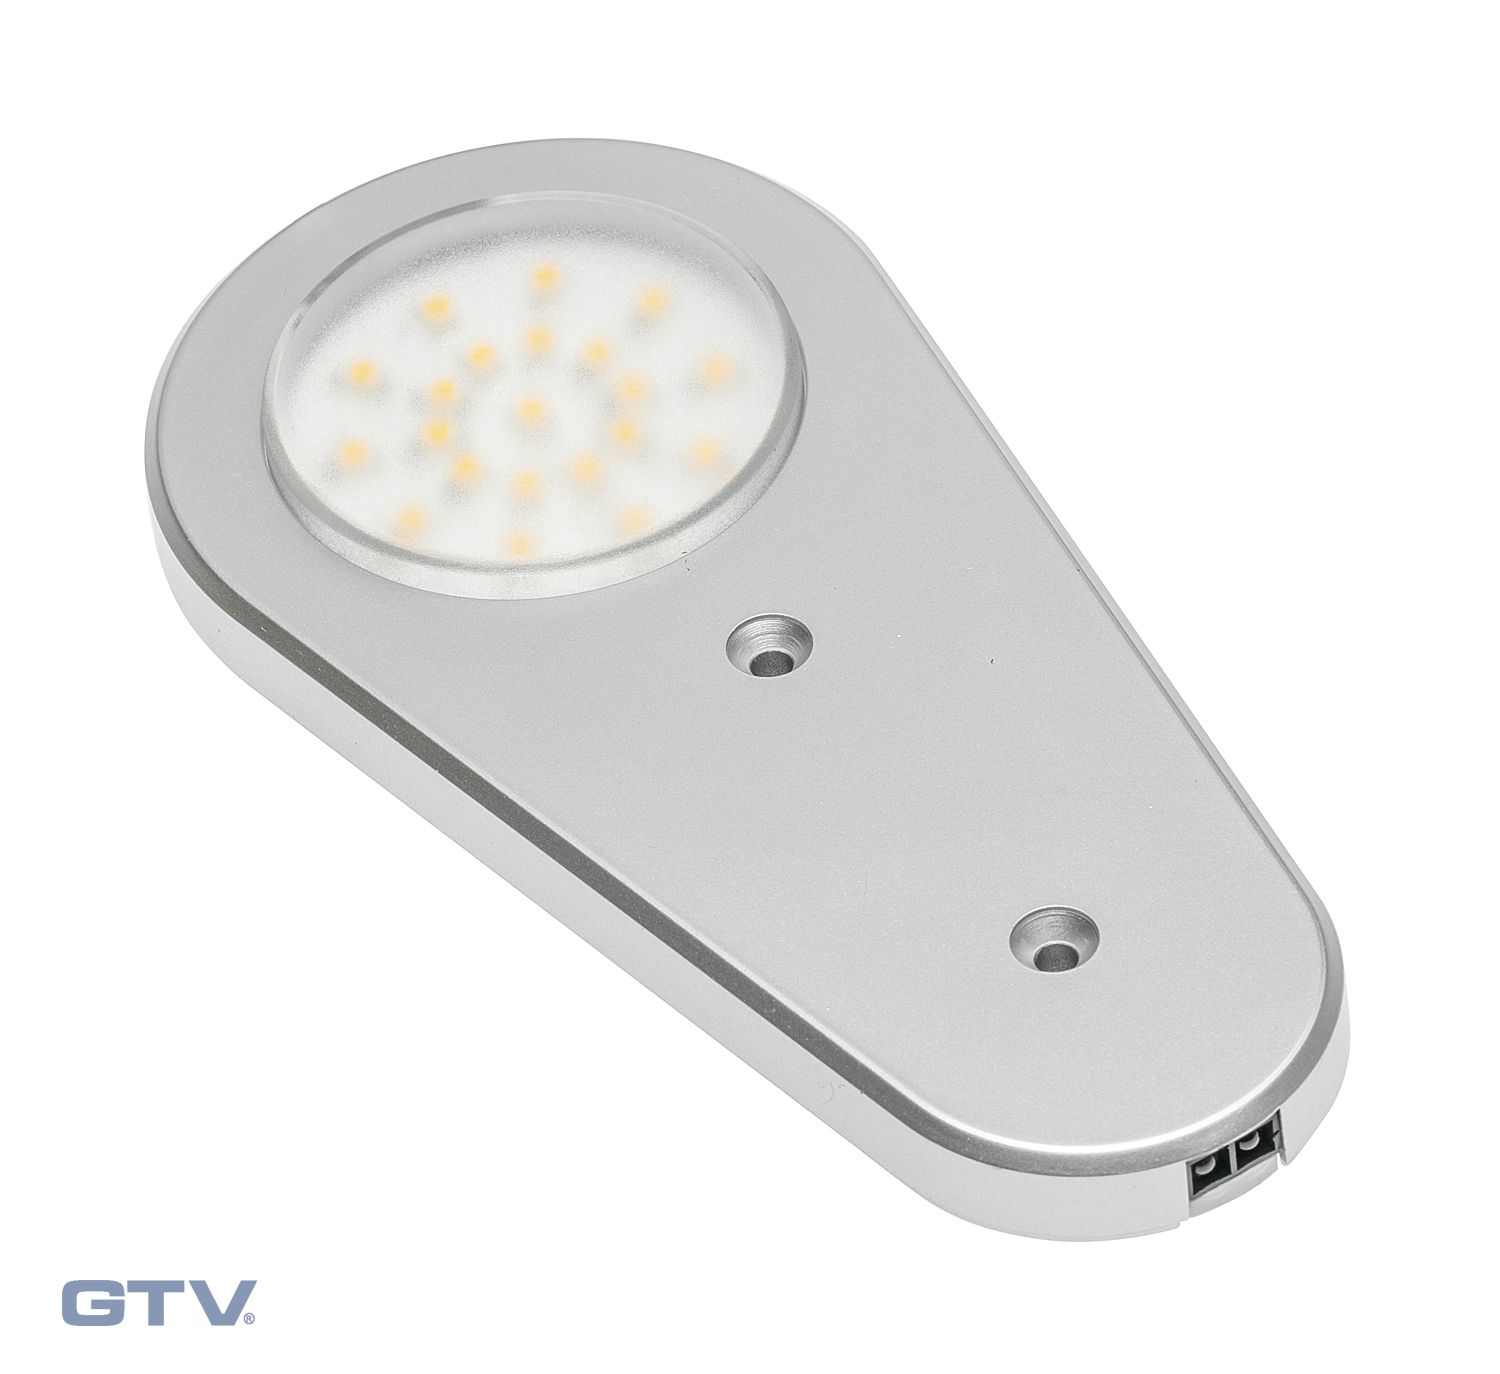 Точечный накладной светодиодный светильник Soria статический датчик 12V, 21д, теп., ал. GTV, цвет теплый белый